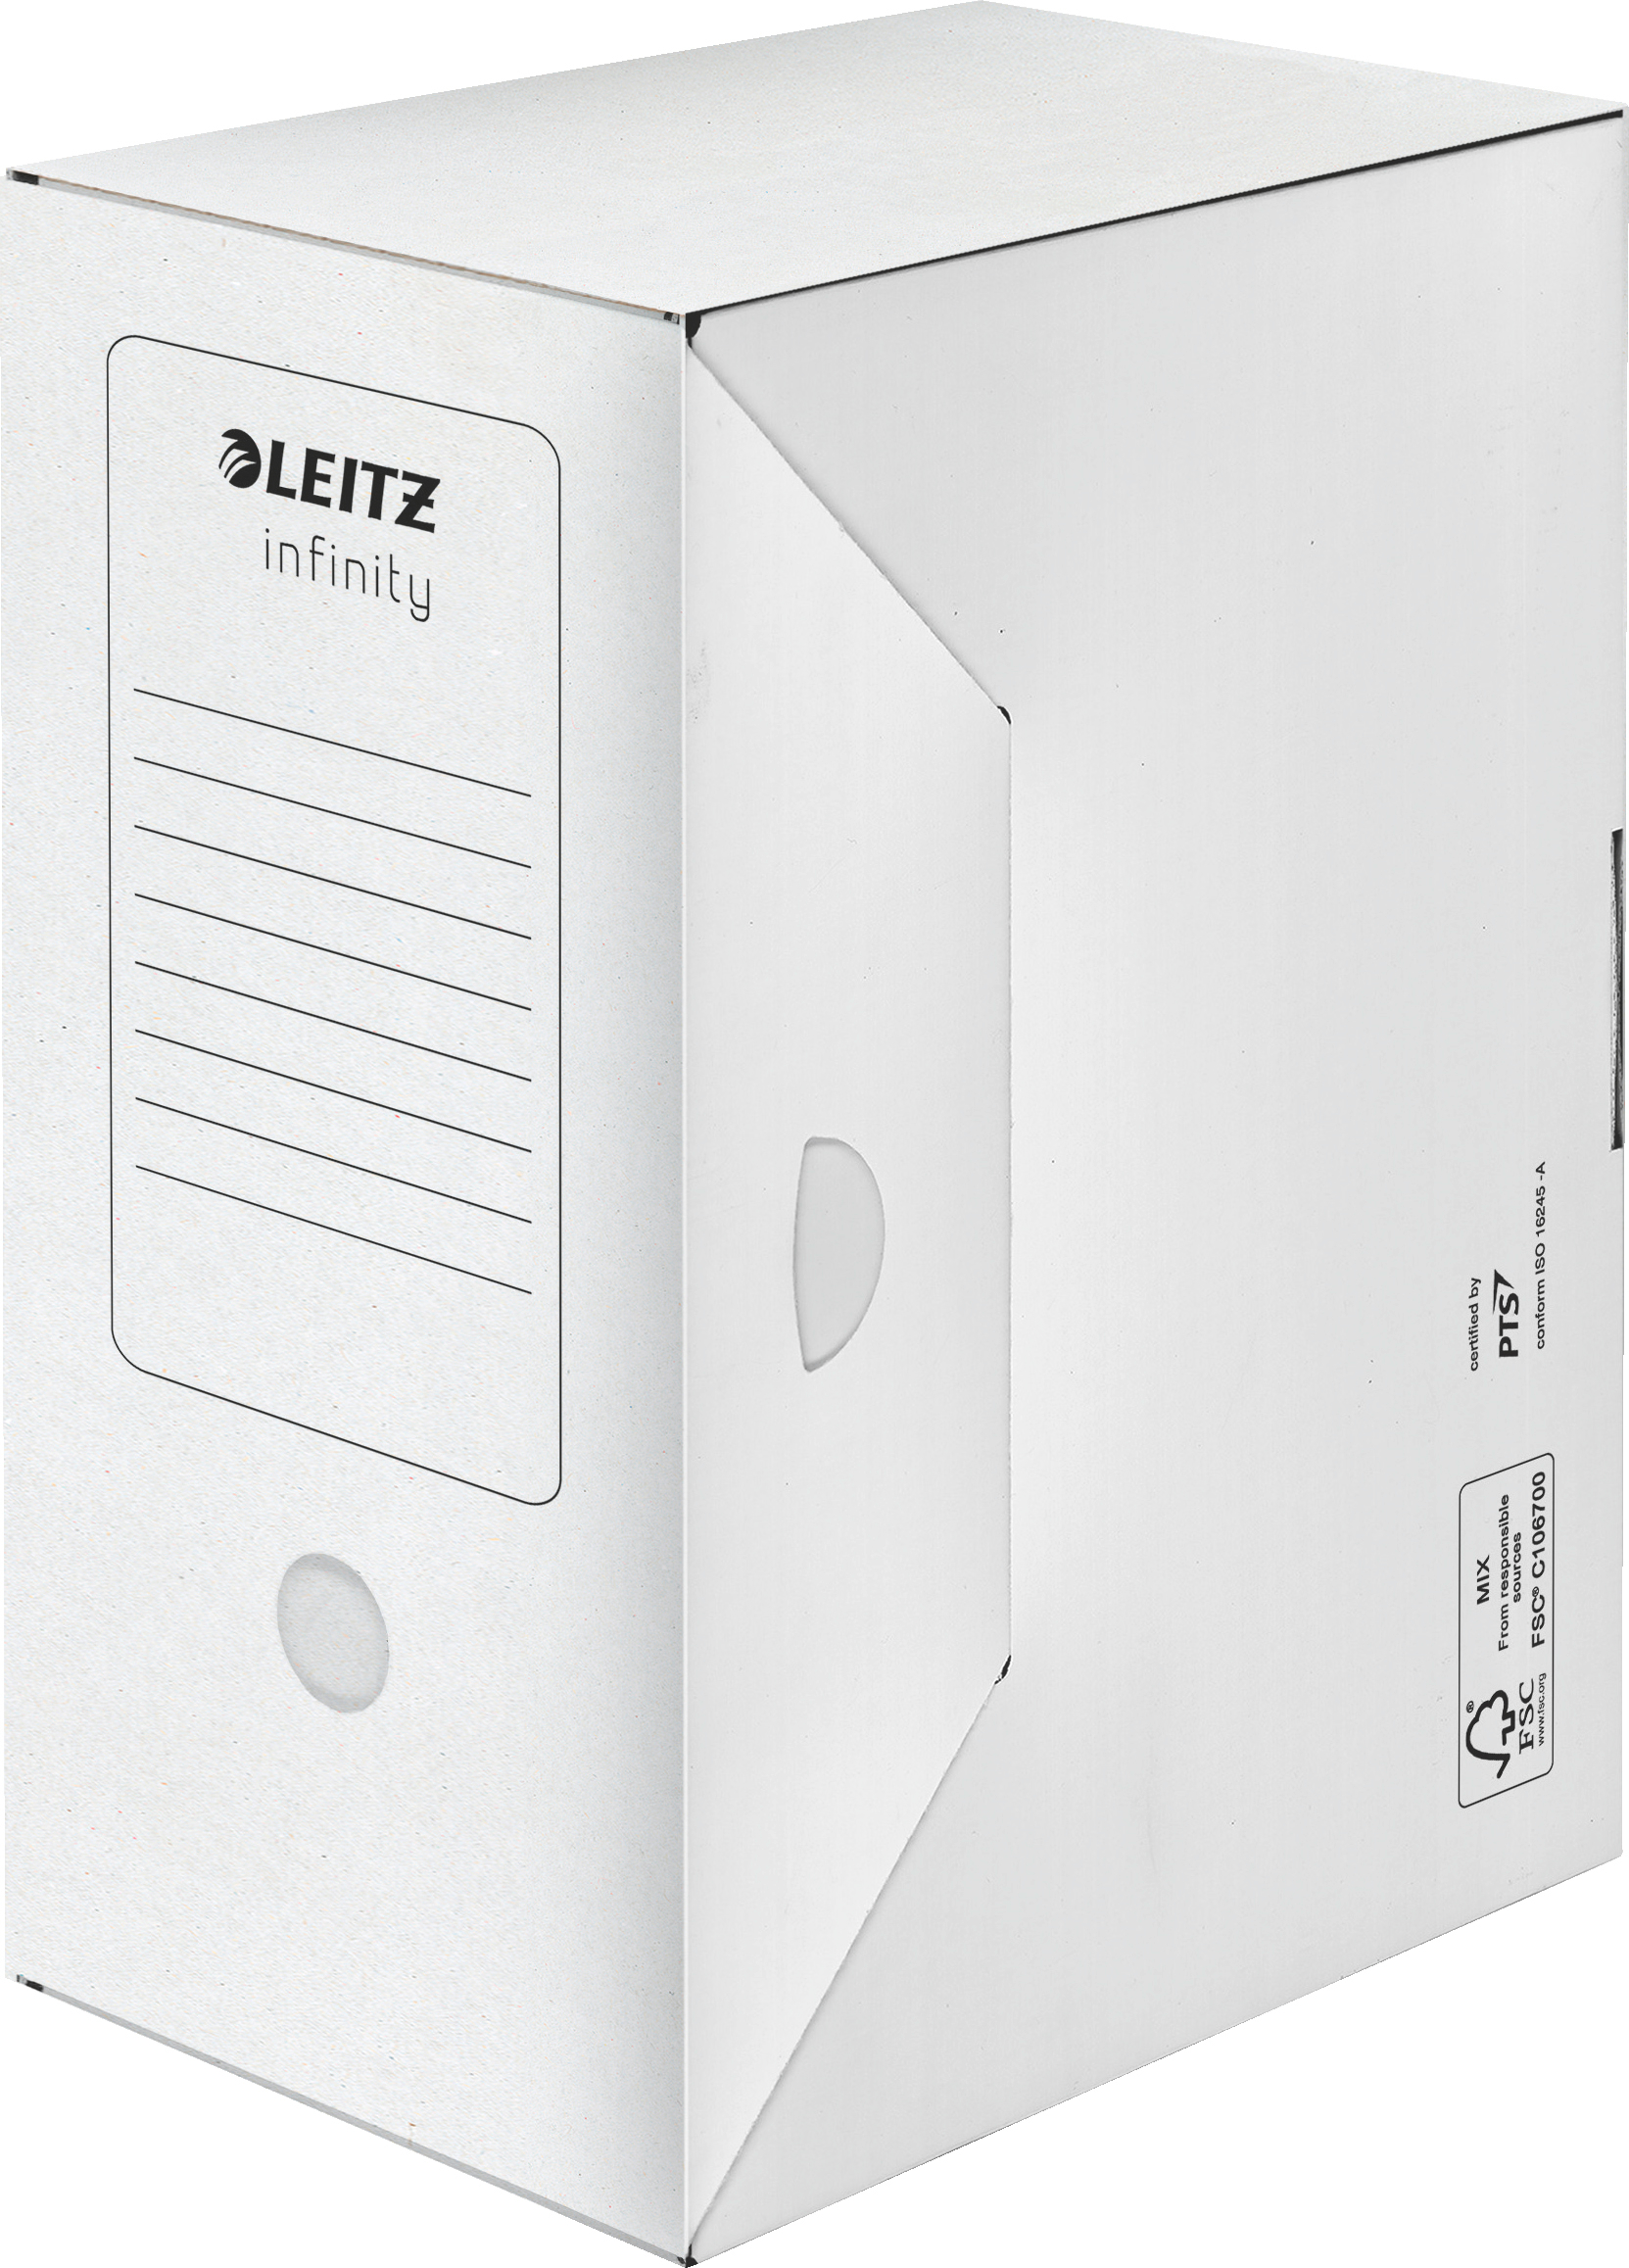 LEITZ Boîte d'archive Infinity 60920000 blanc 330x150x255mm blanc 330x150x255mm